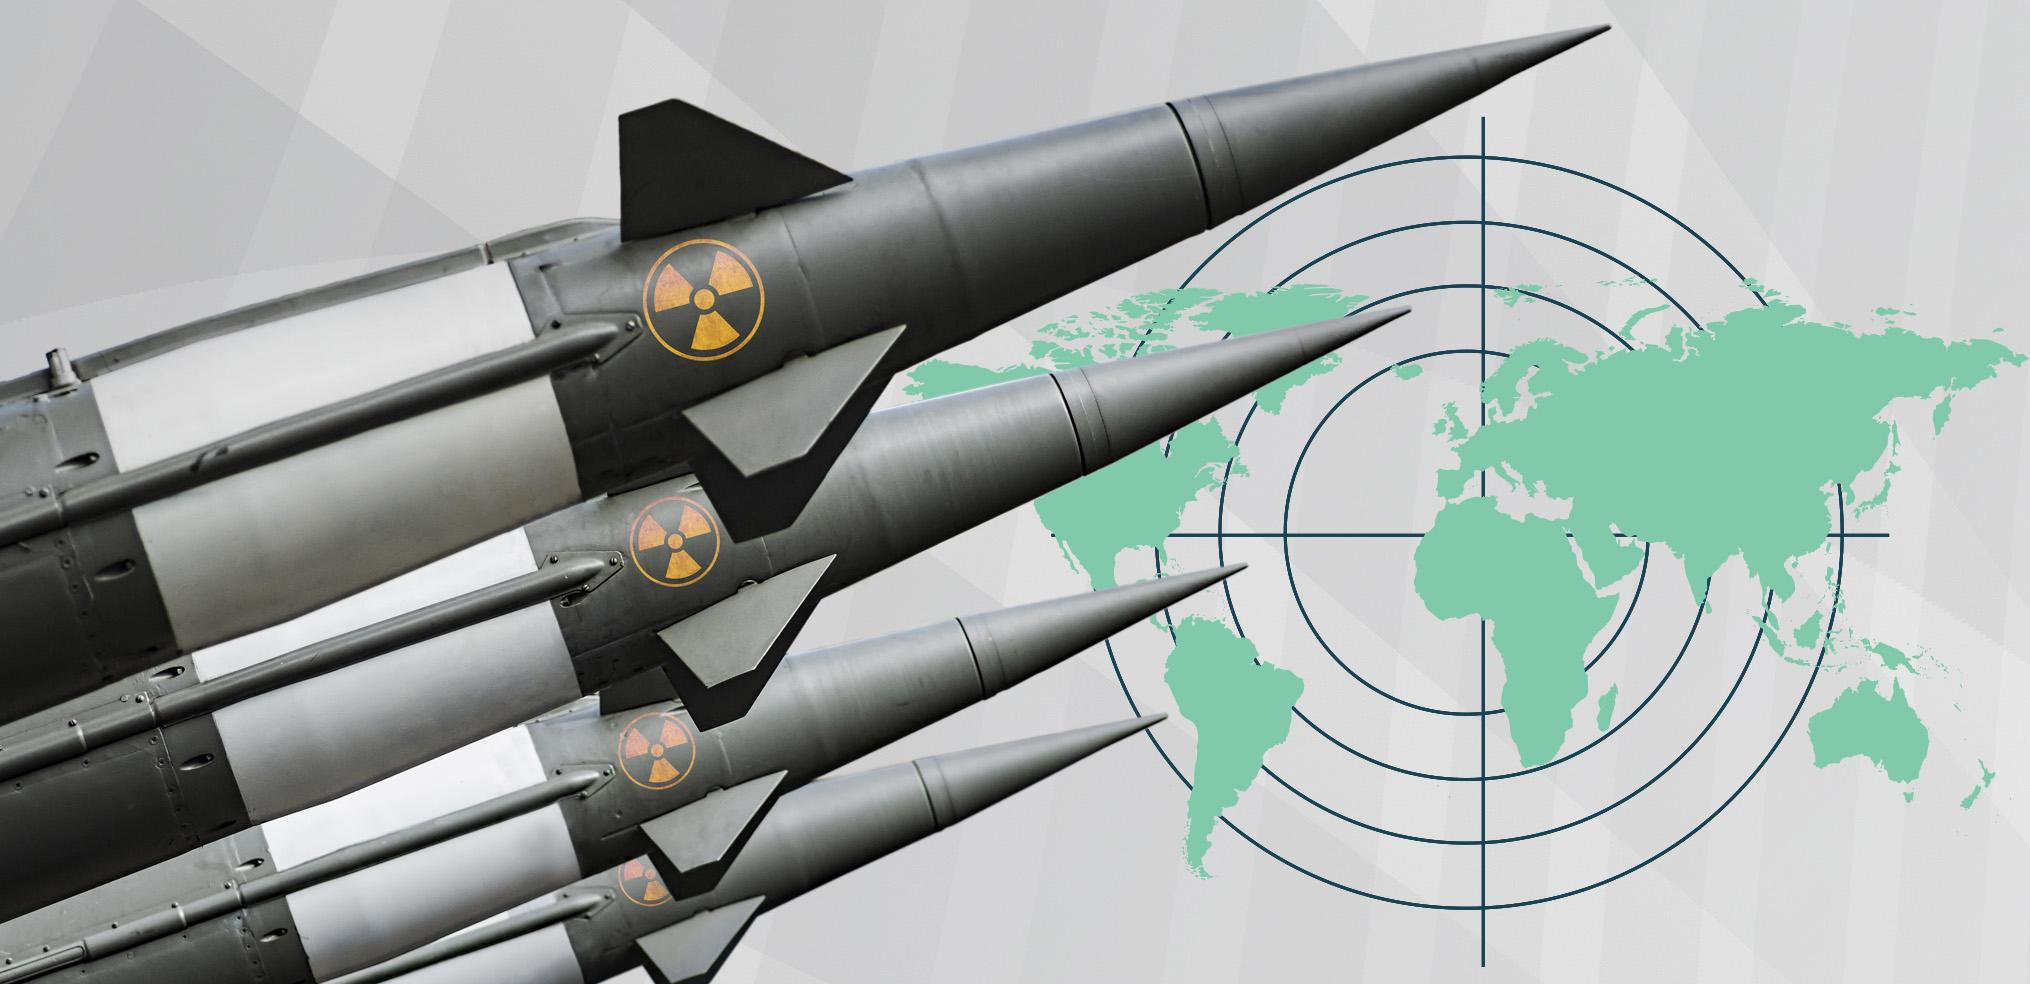 لماذا برز الاهتمام بأسلحة الردع الاستراتيجية في الساحة الدولية؟